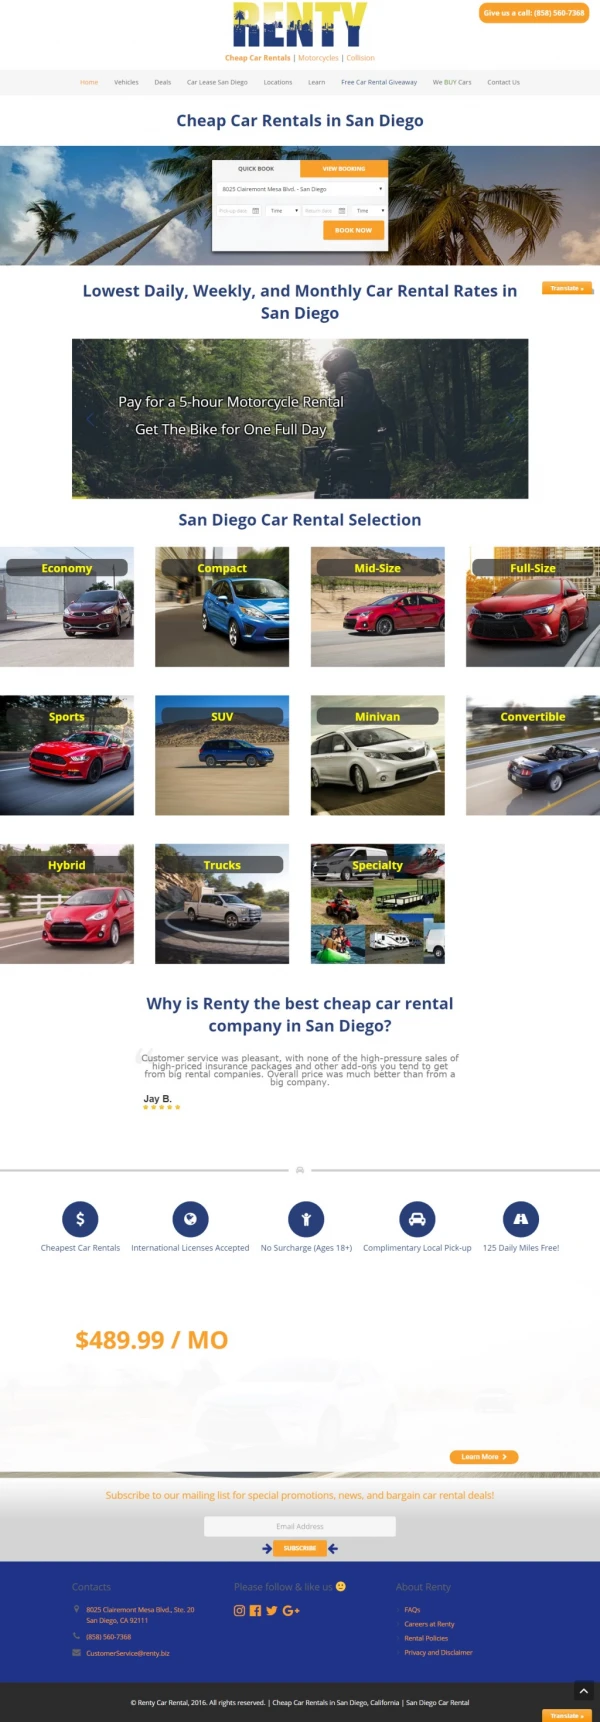 Cheap Car Rental San Diego, Rent a Car in San Diego, Renty Car Rental